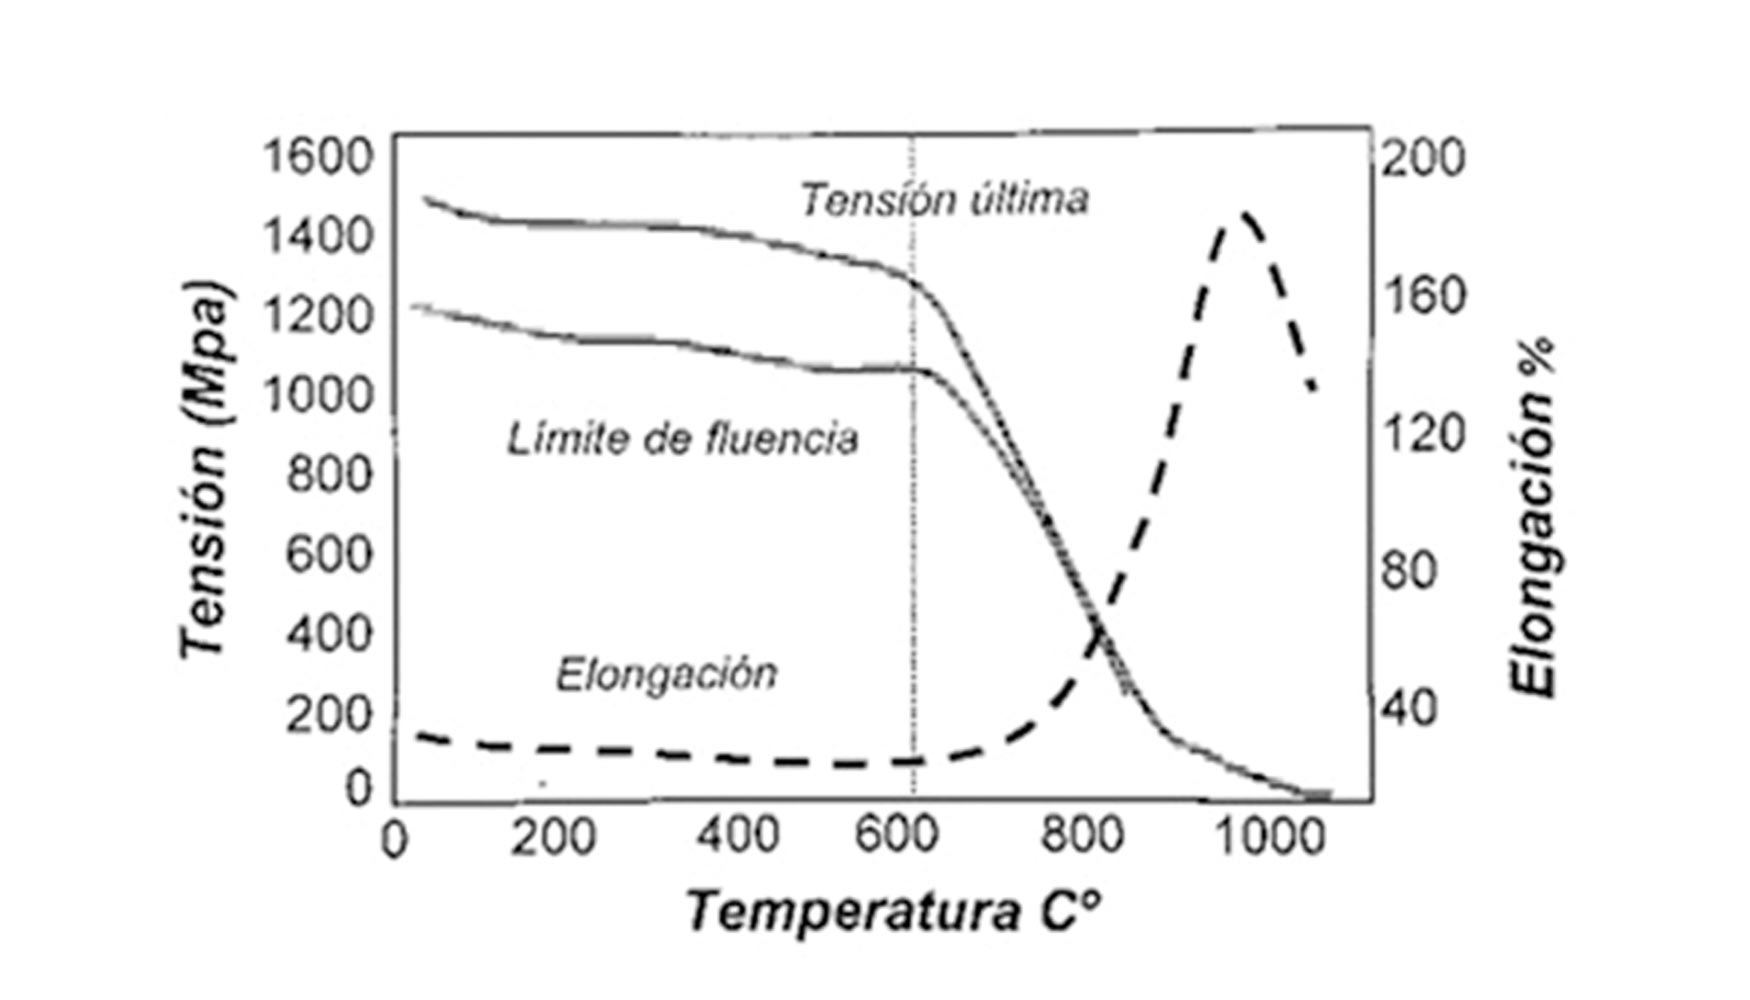 Resistencia del Inconel 718 a diferentes temperaturas Otros factores a considerar son las variaciones rpidas de temperaturas (choque trmico)...